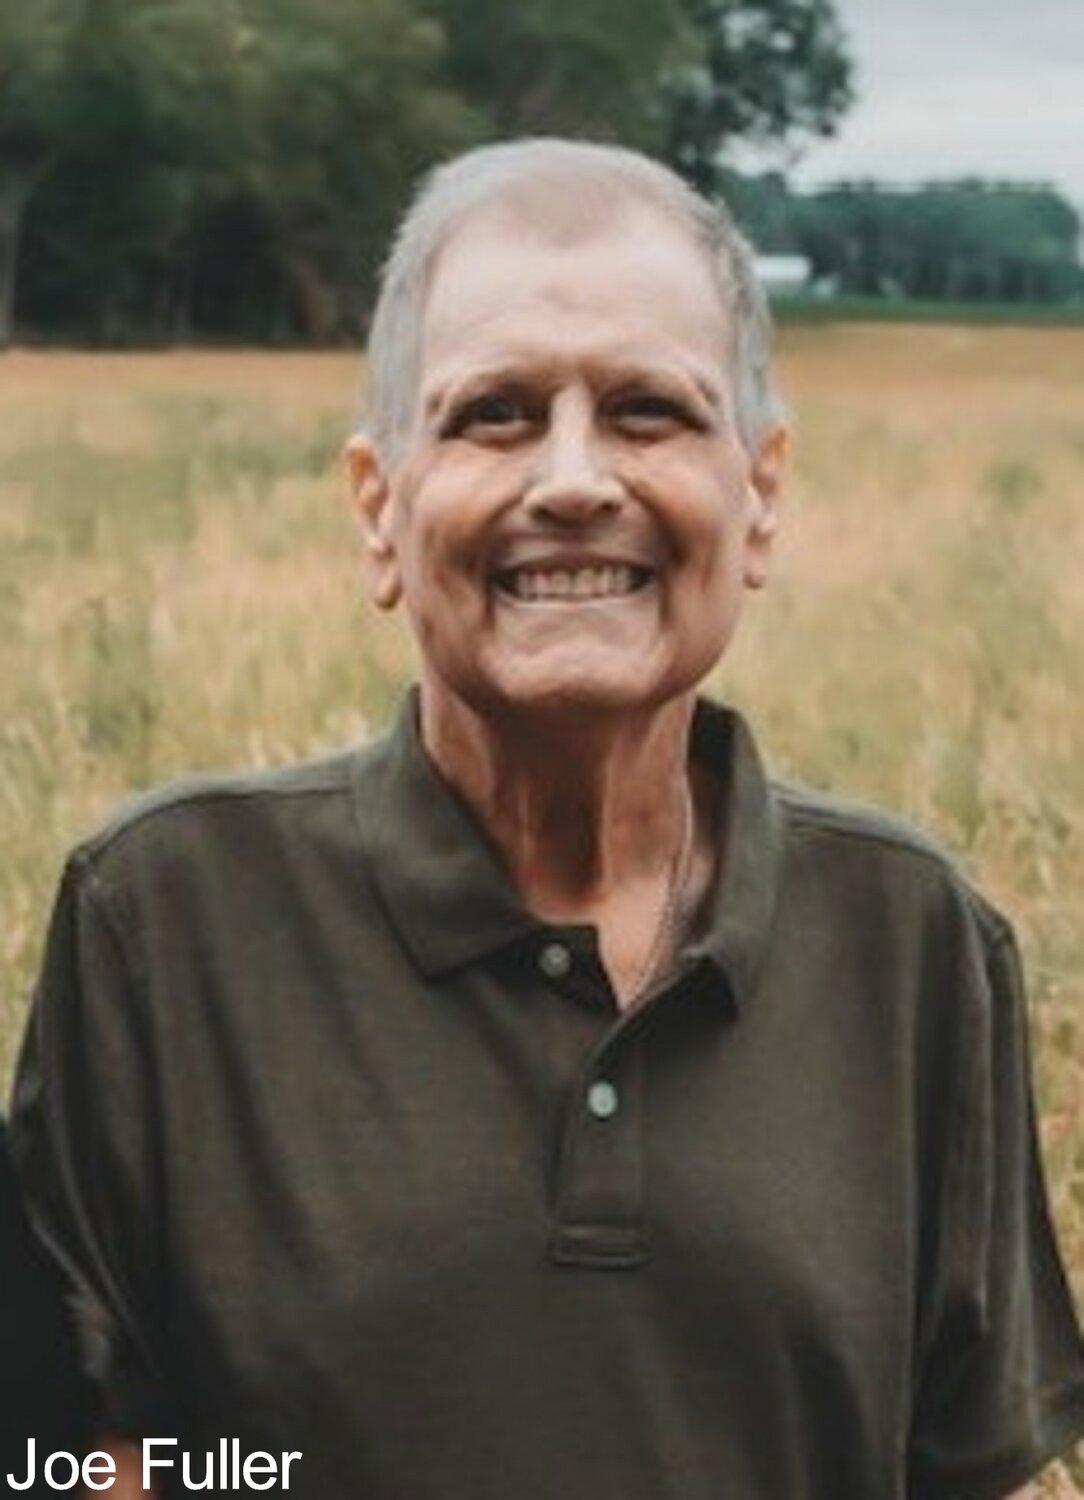 Vigen Memorial Home obituary Joseph “Joe” Michael Fuller, 69